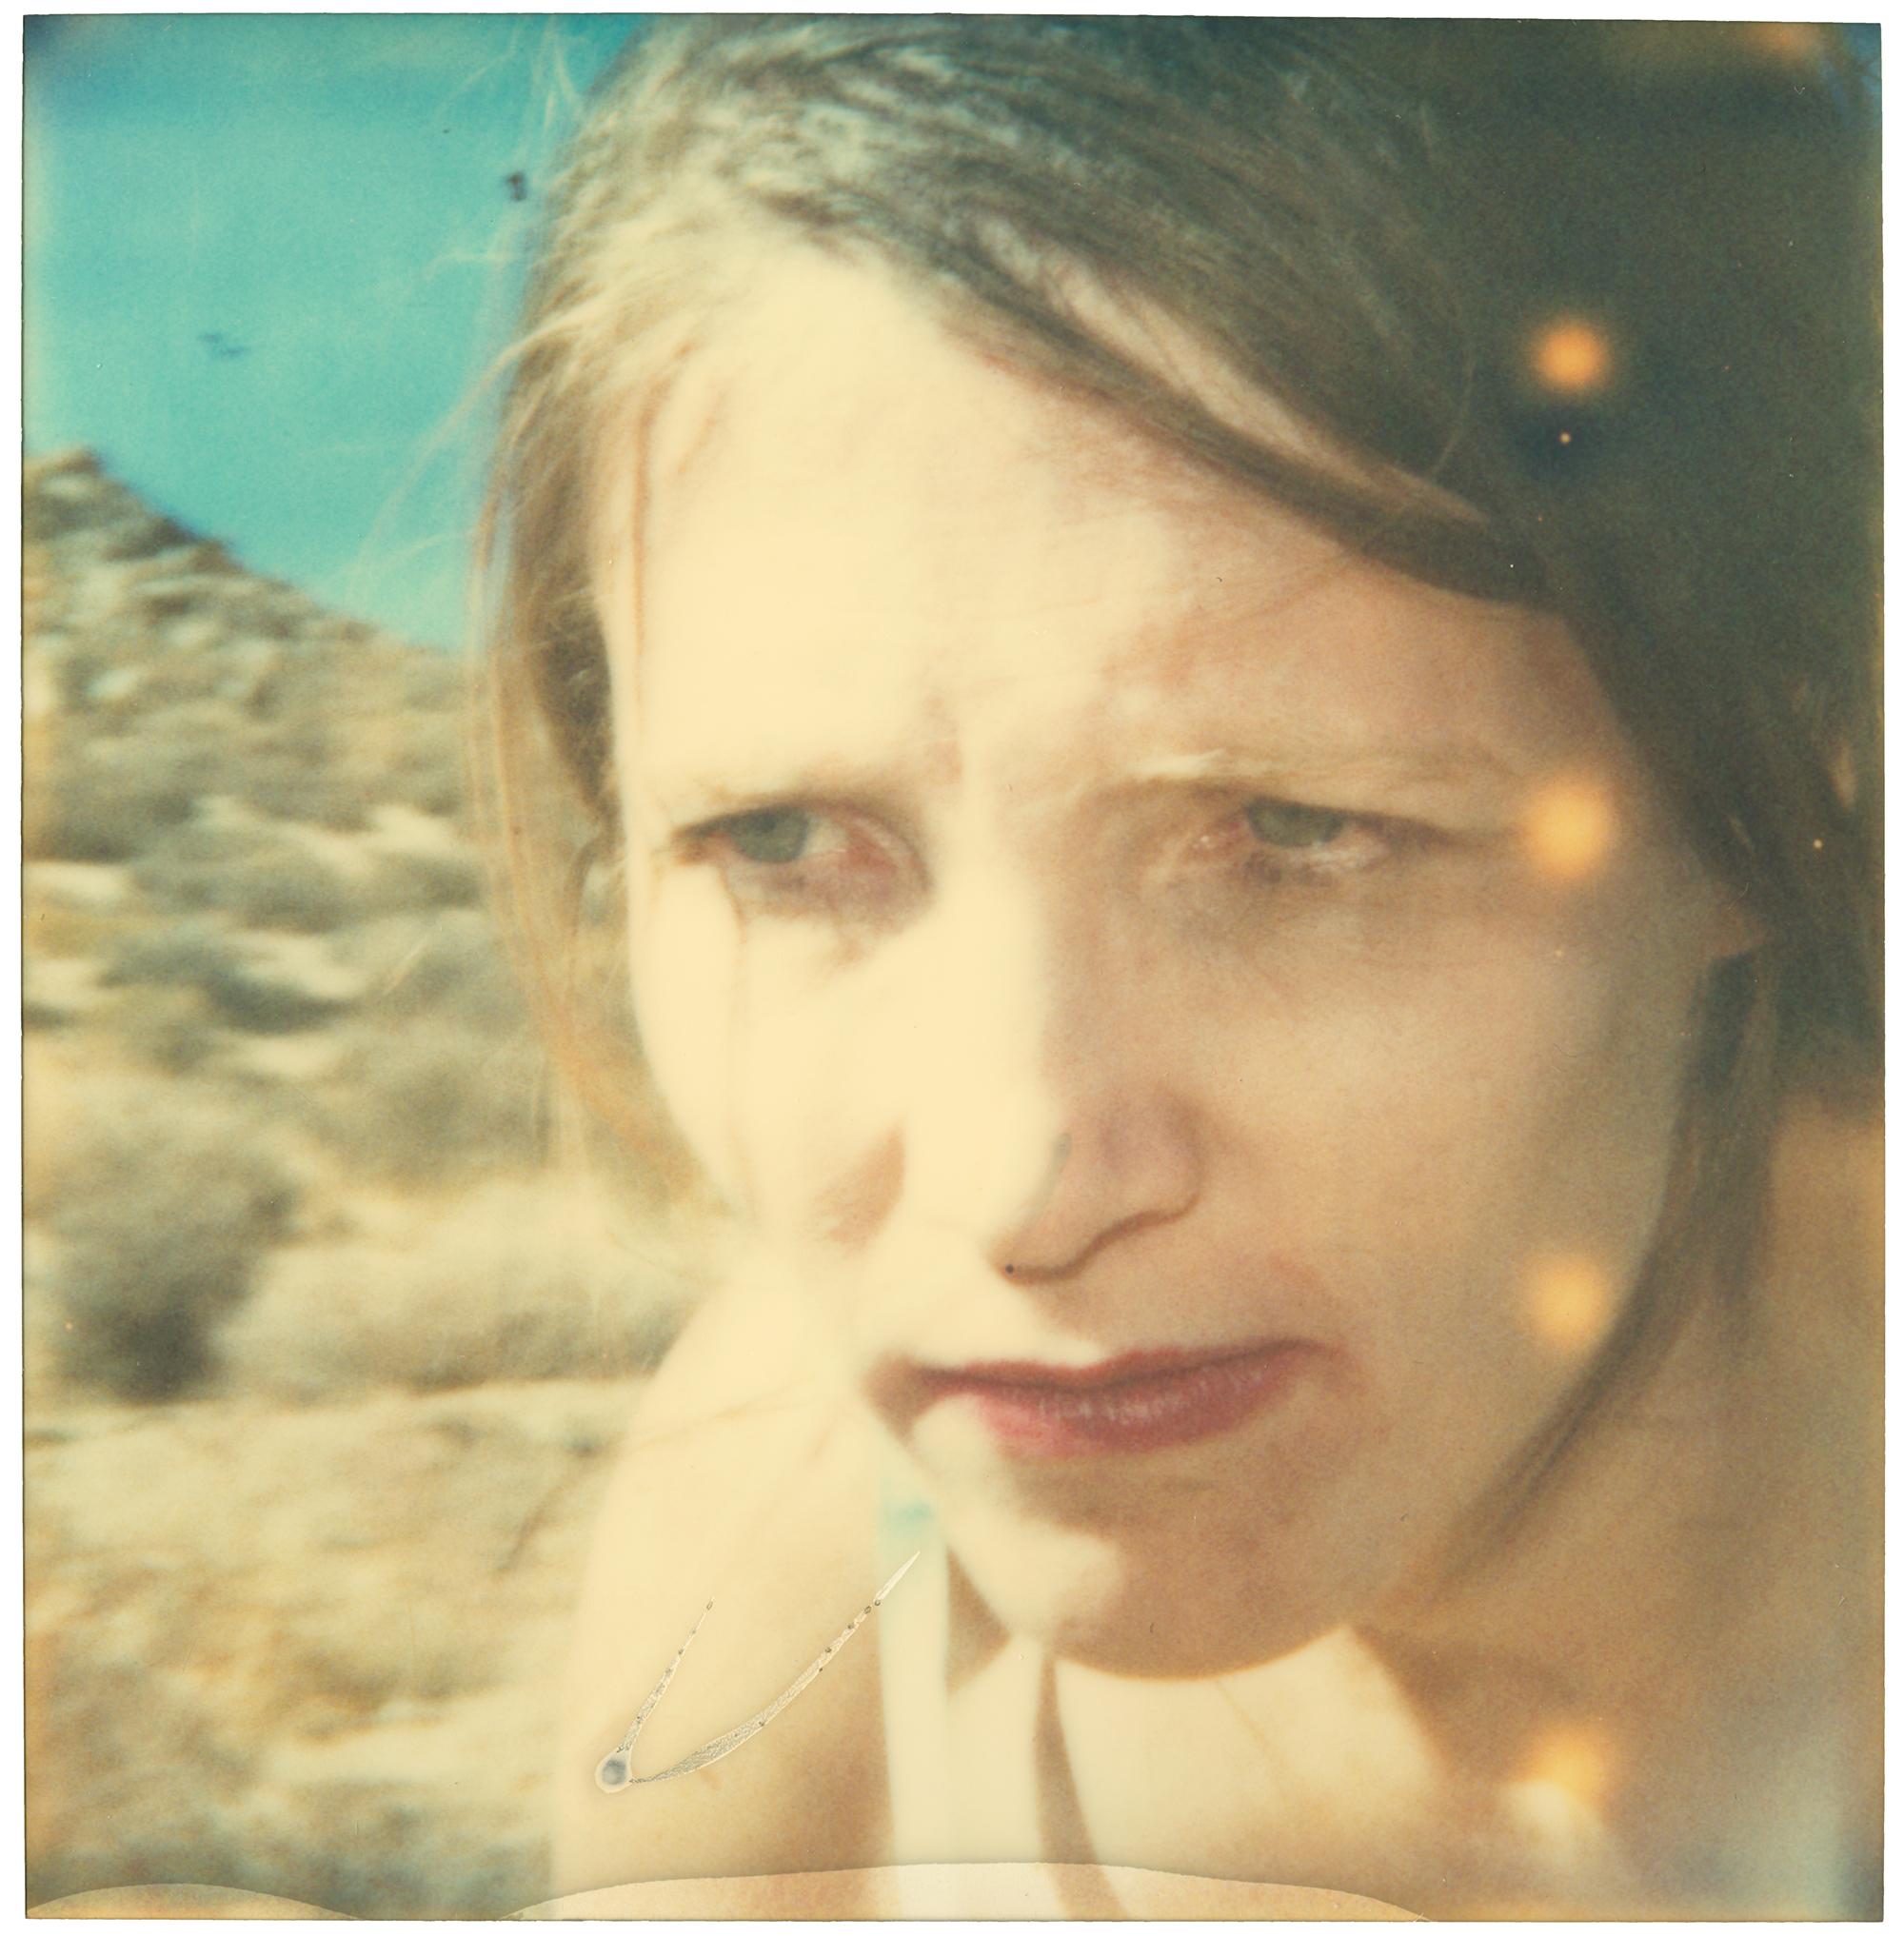 Stefanie Schneider Abstract Photograph - Insatiable (Wastelands)